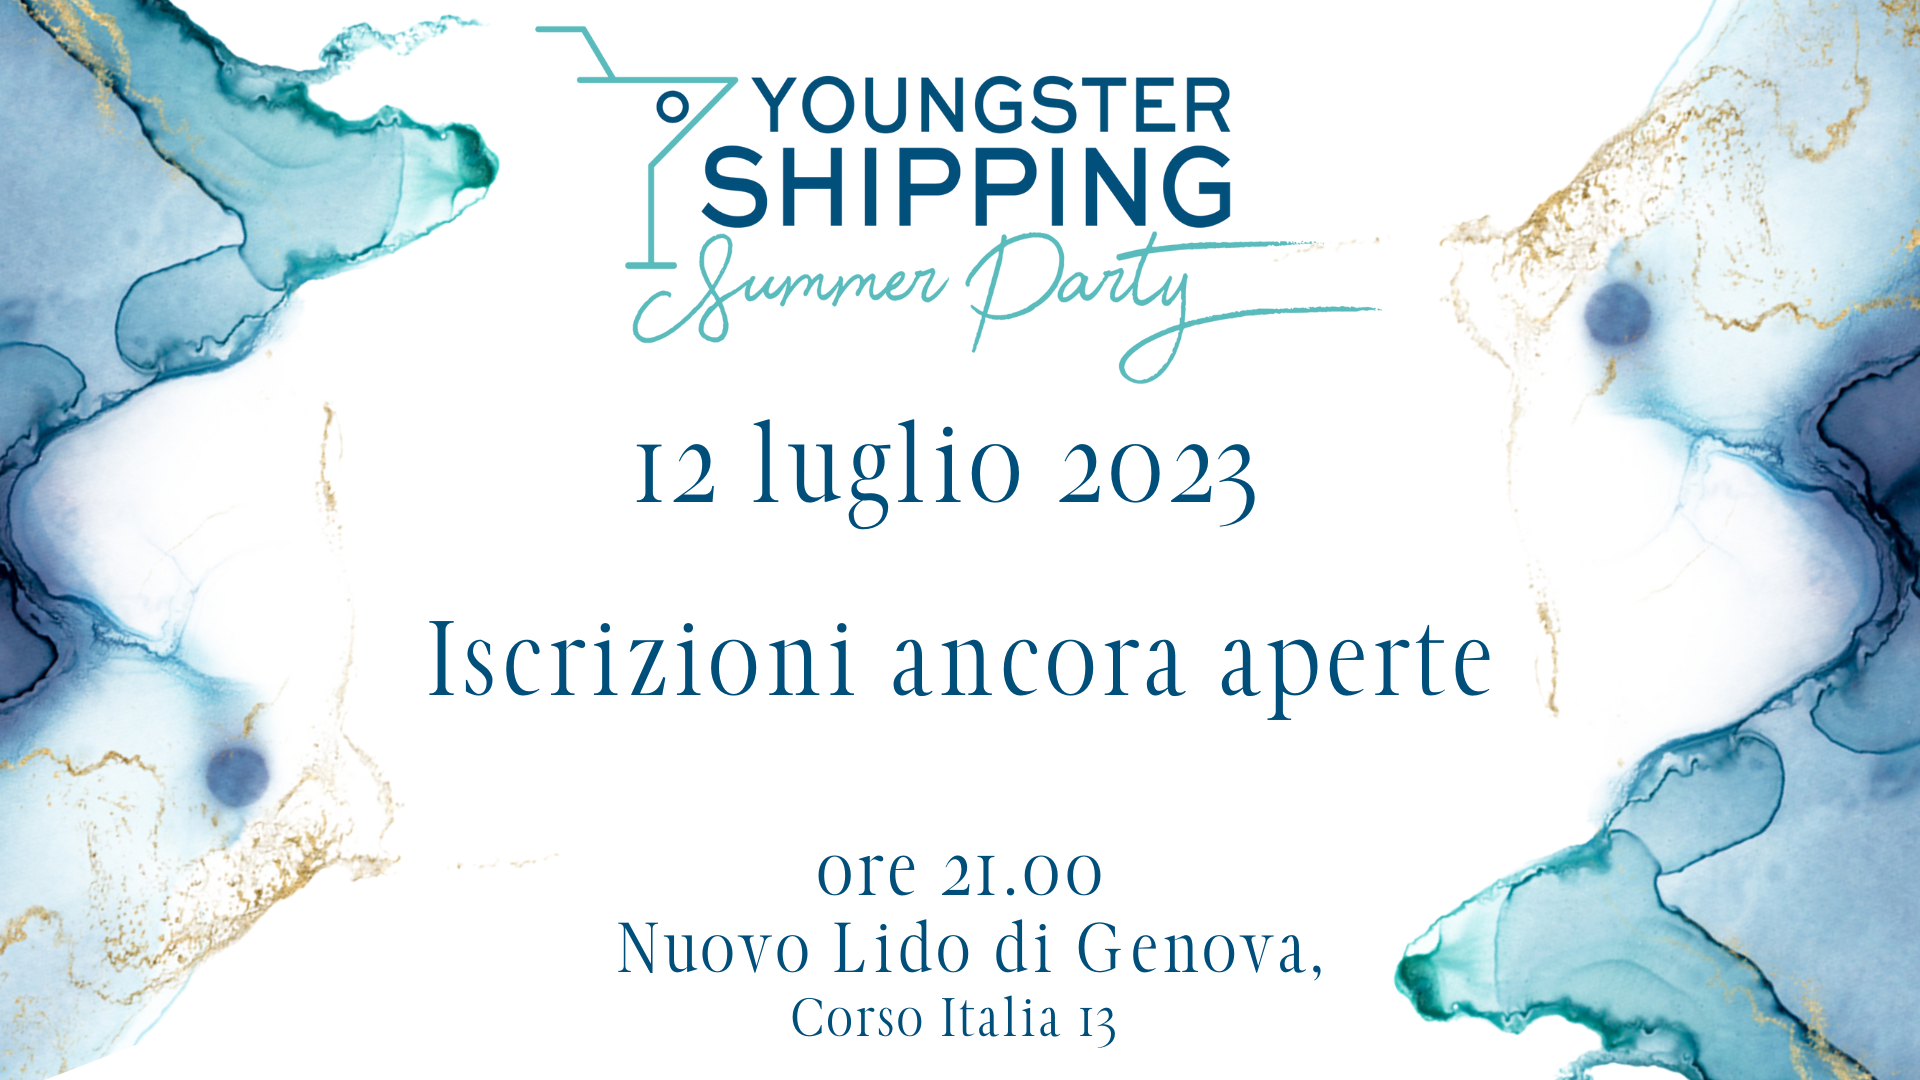 12 luglio, Youngster Shipping Summer Party. Iscrizioni ancora aperte!